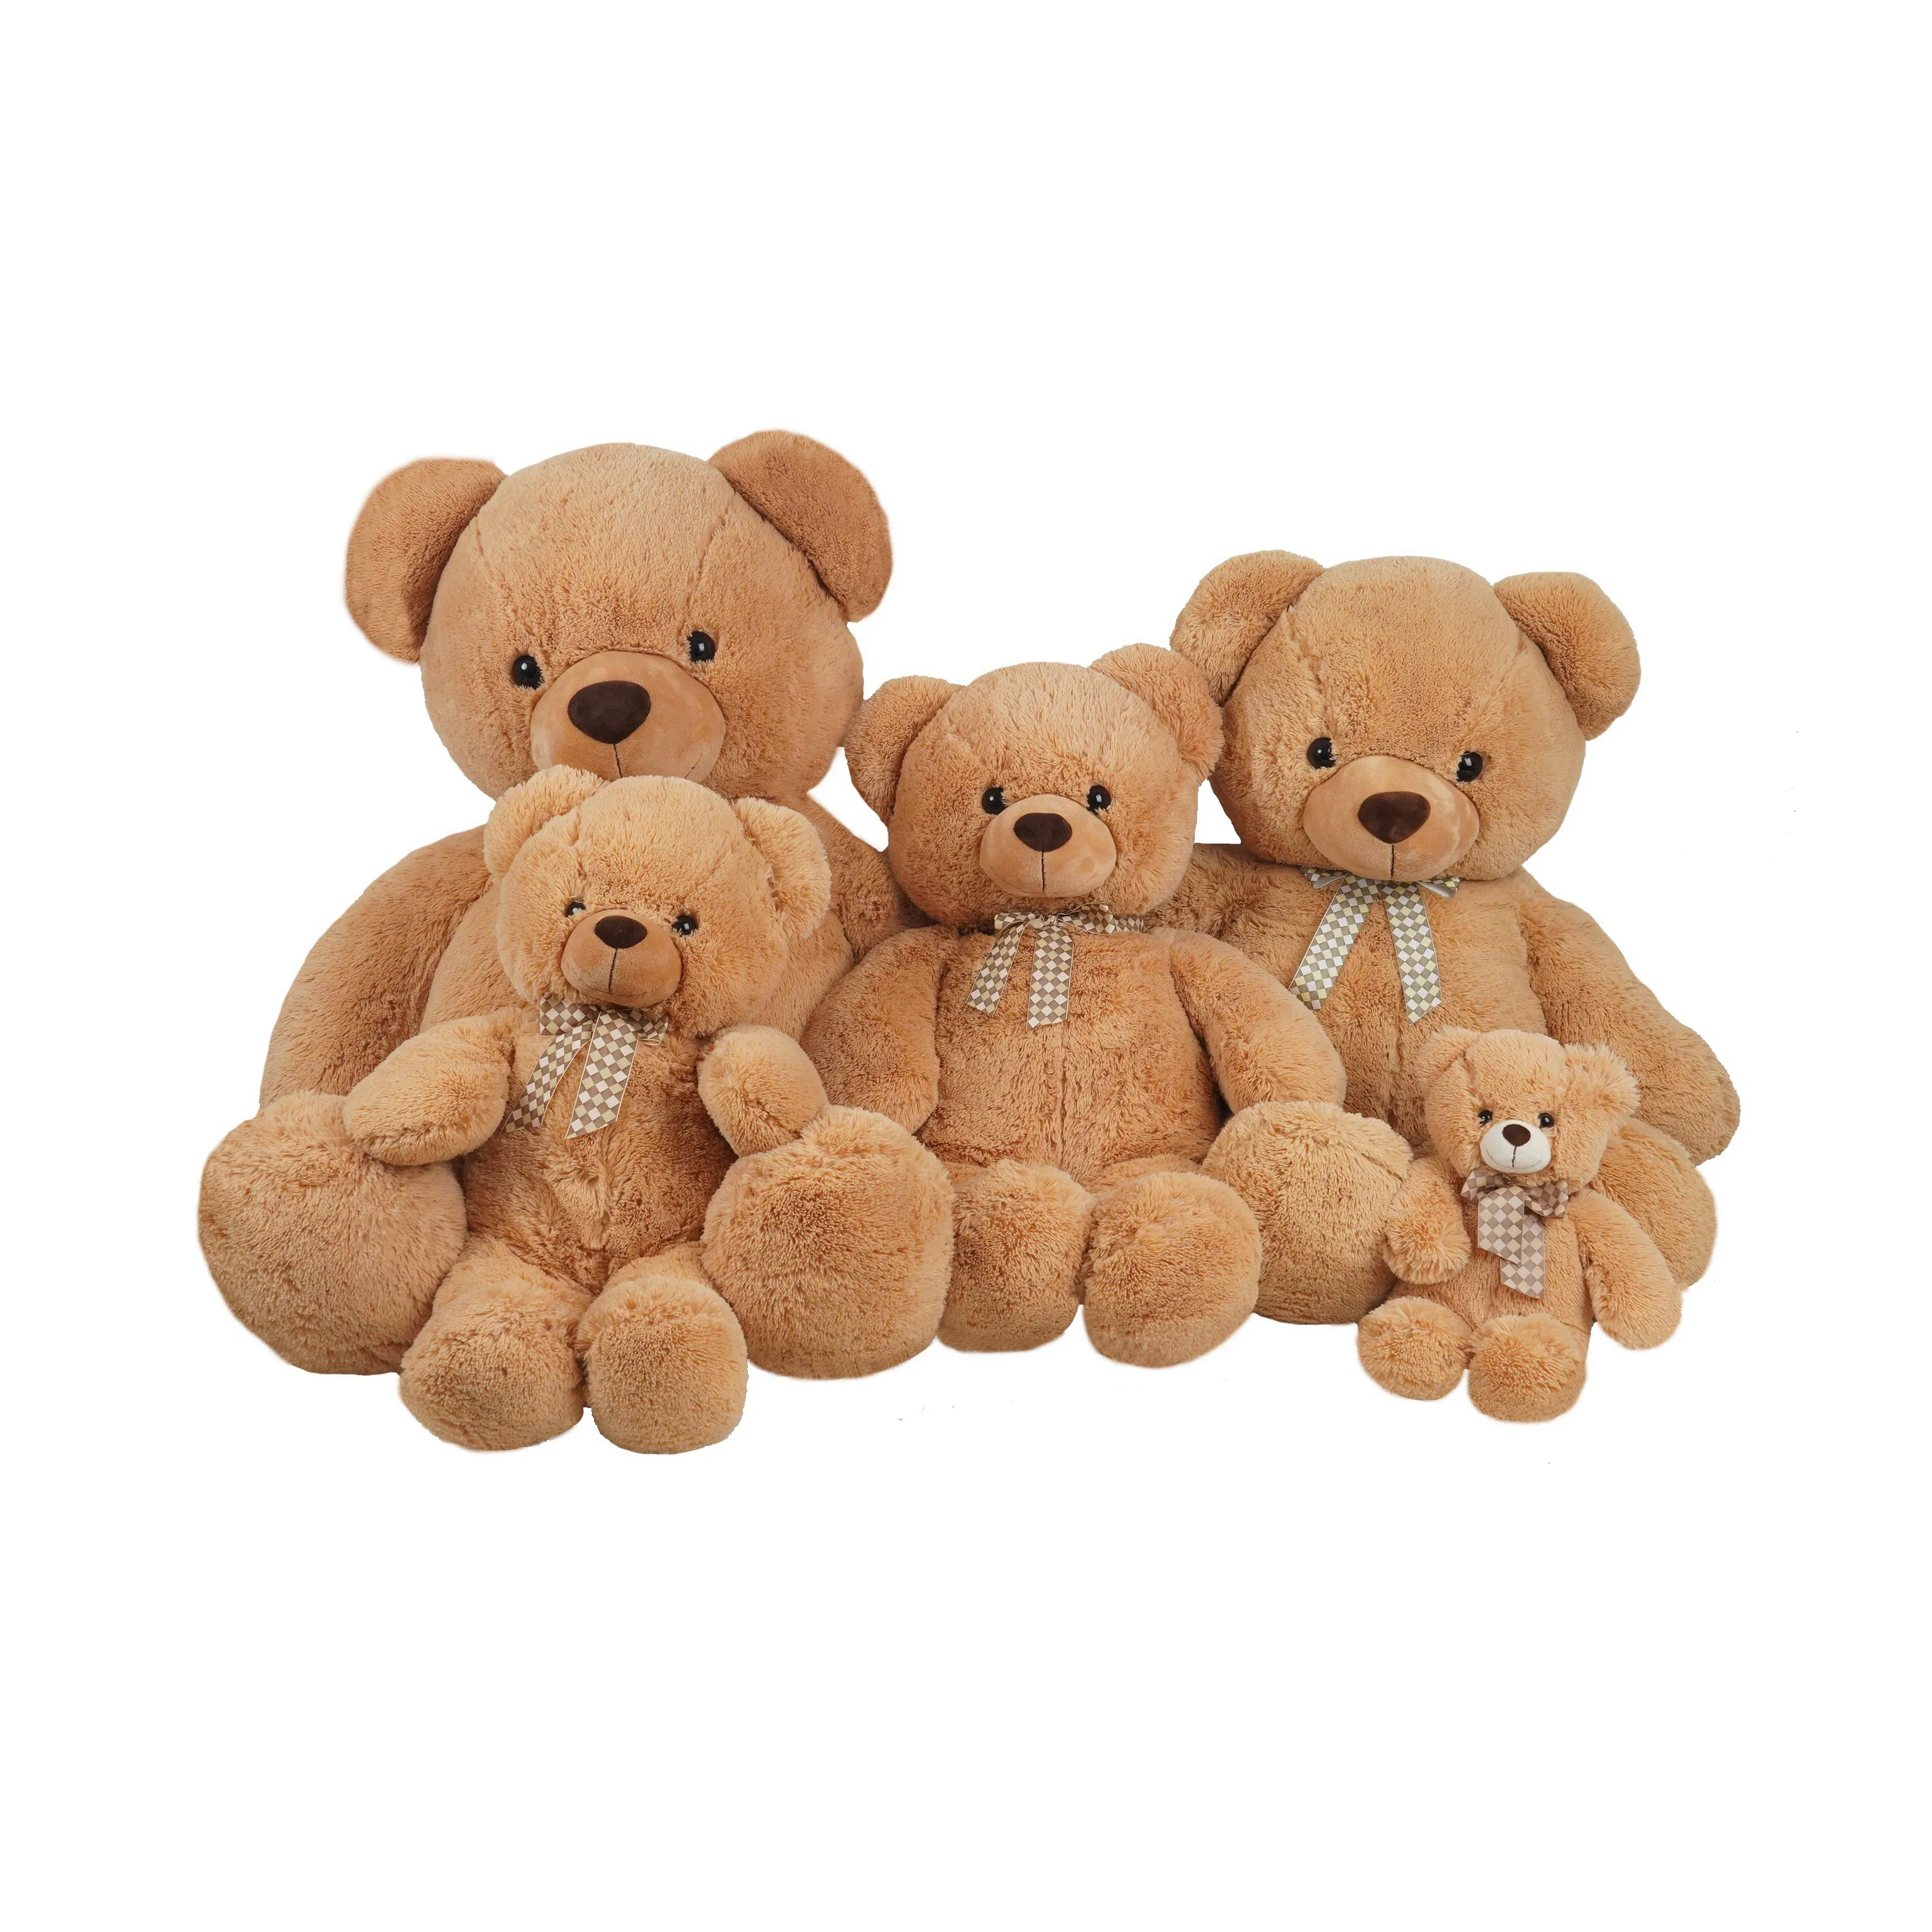 Neuankömmlinge hochwertige maßge schneiderte Plüsch gefüllte Teddybär Spielzeug für Spielzeug/Geschenke